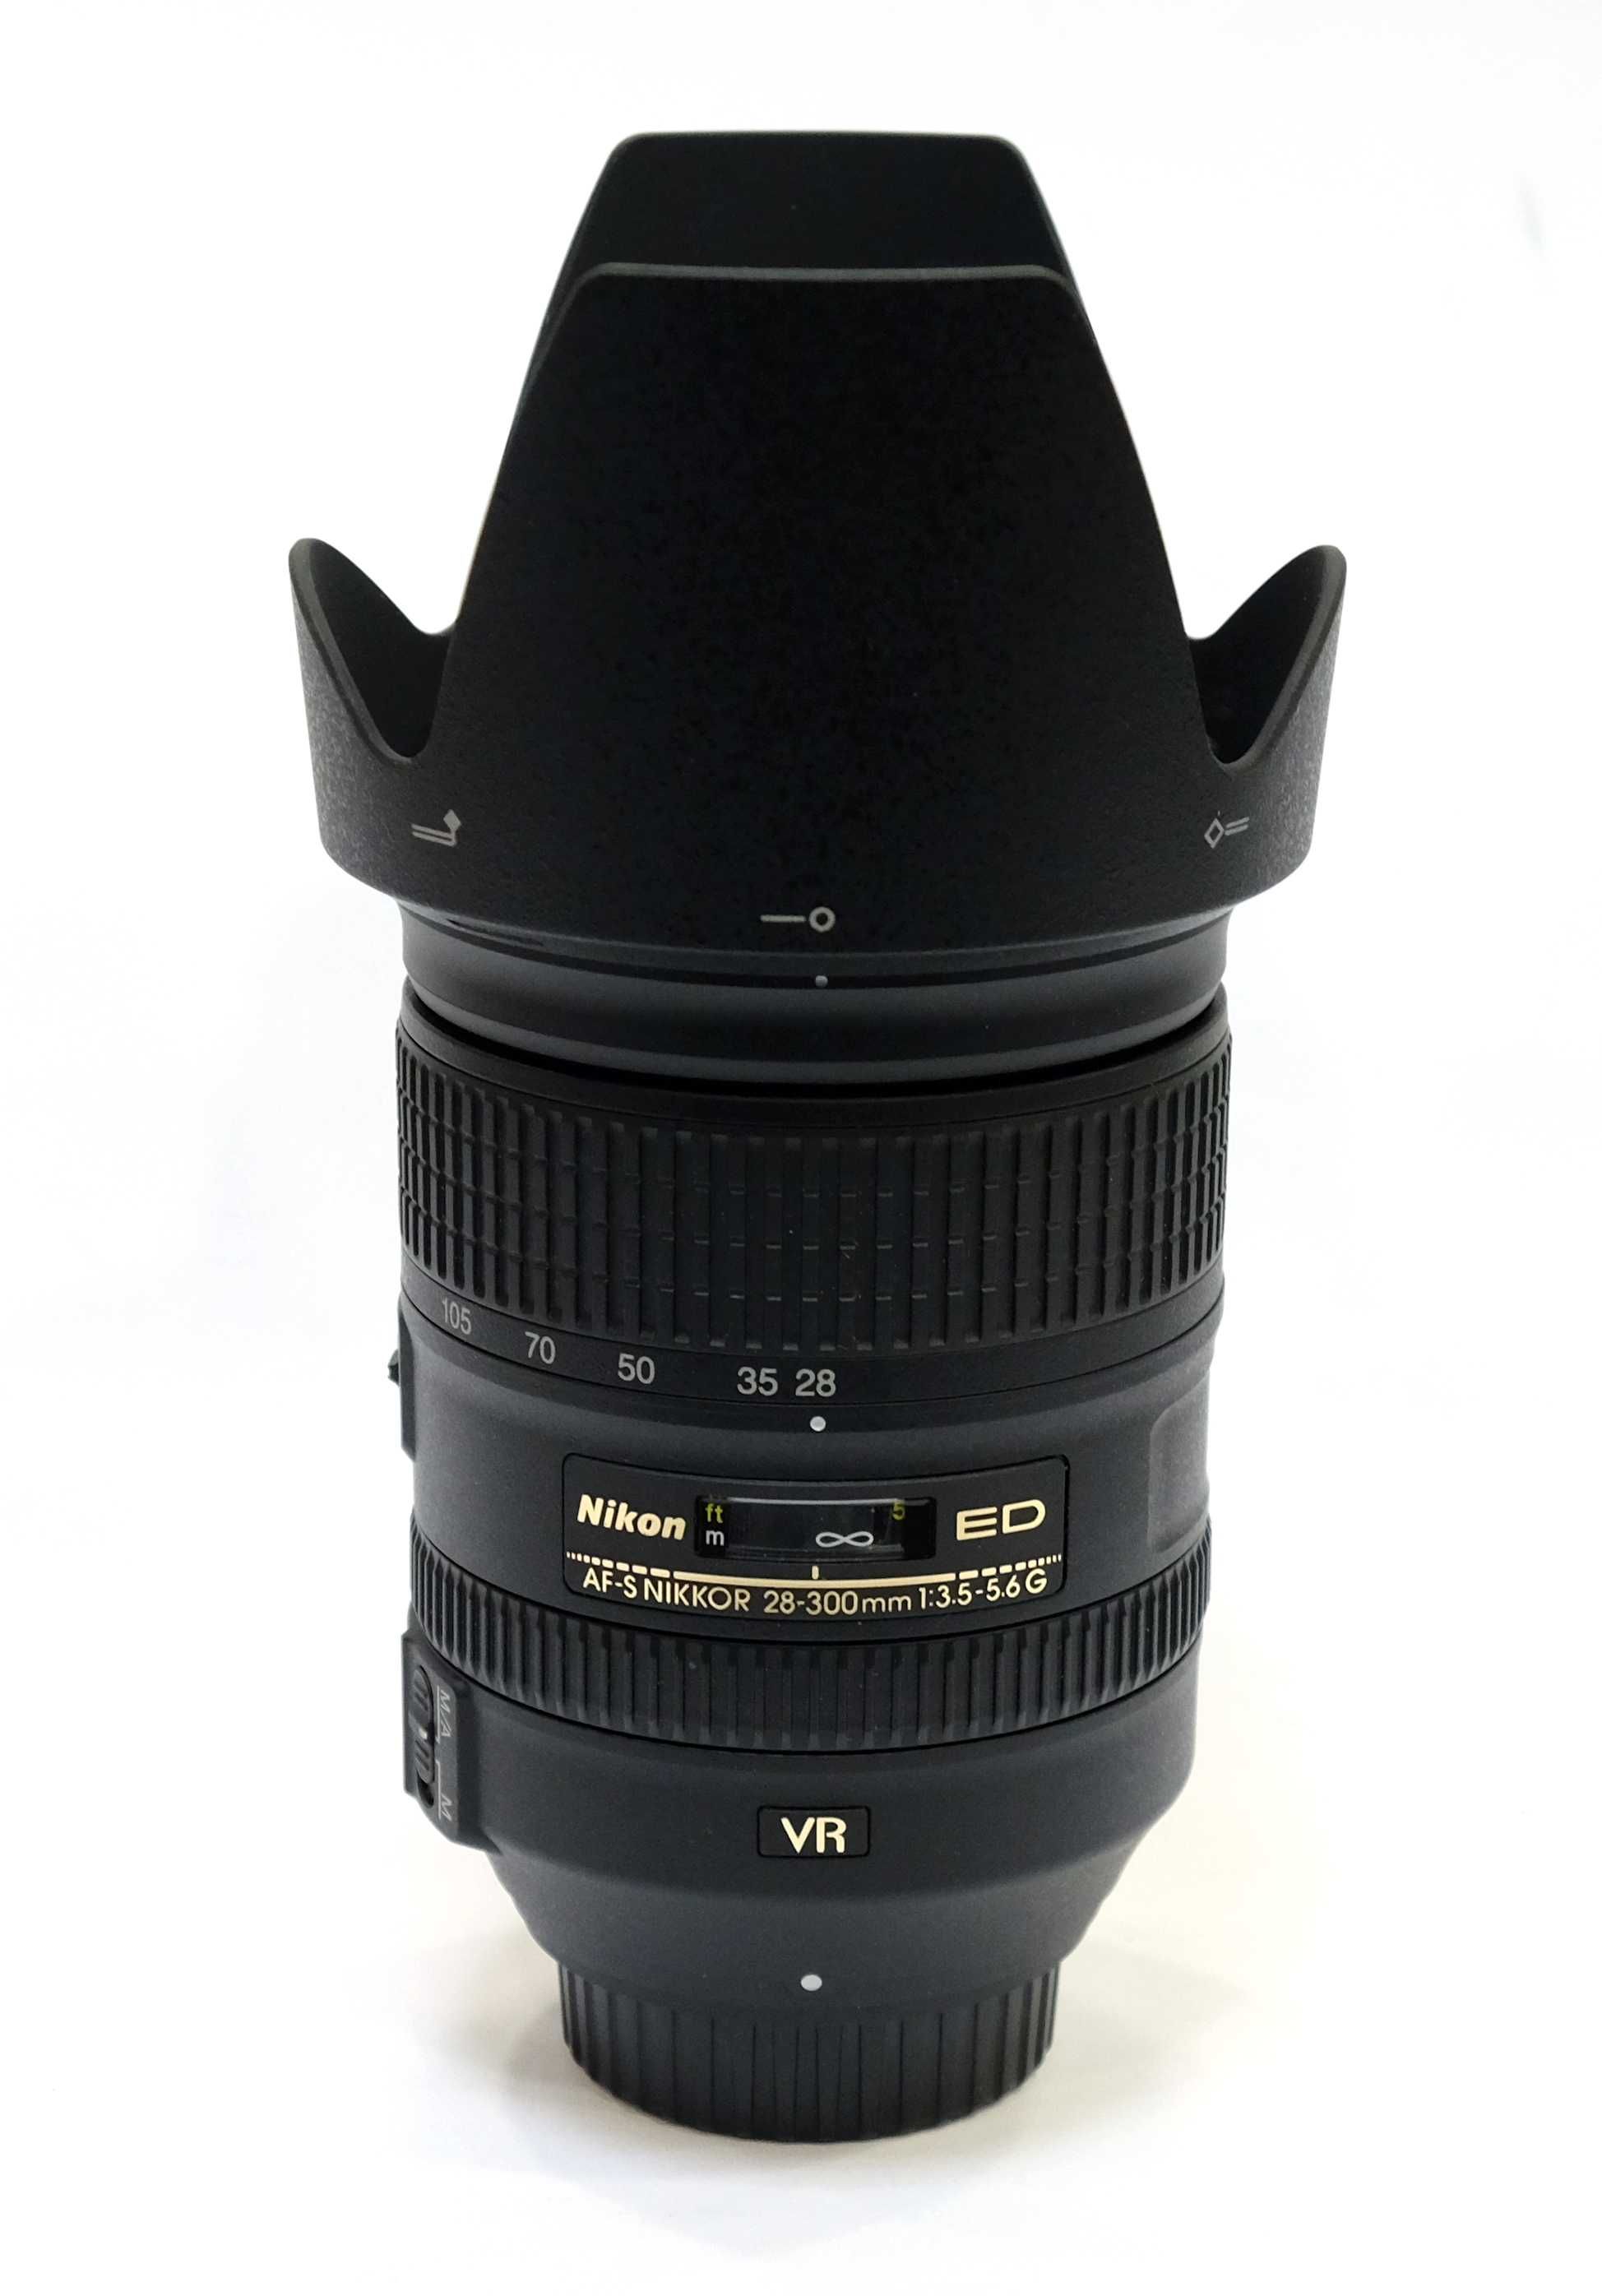 Obiektyw Nikon AF-S 28-300mm F/3.5-5.6 G ED VR. Gwarancja!